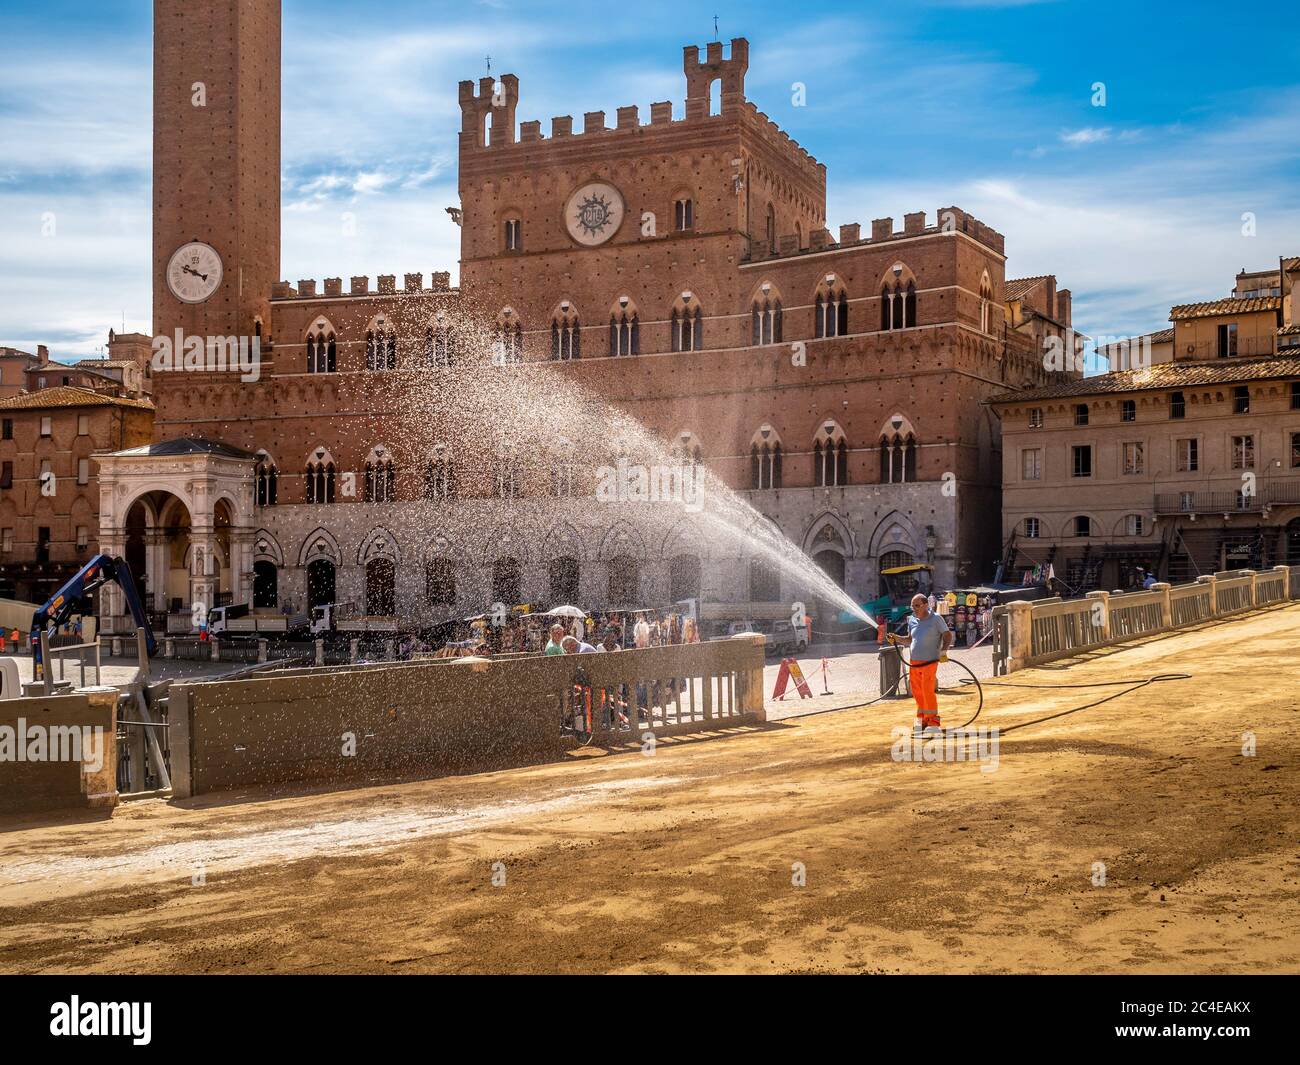 Piazzo del campo ricoperto da uno strato di sabbia, spruzzato d'acqua in preparazione alla gara del Palio. Siena Italia. Foto Stock